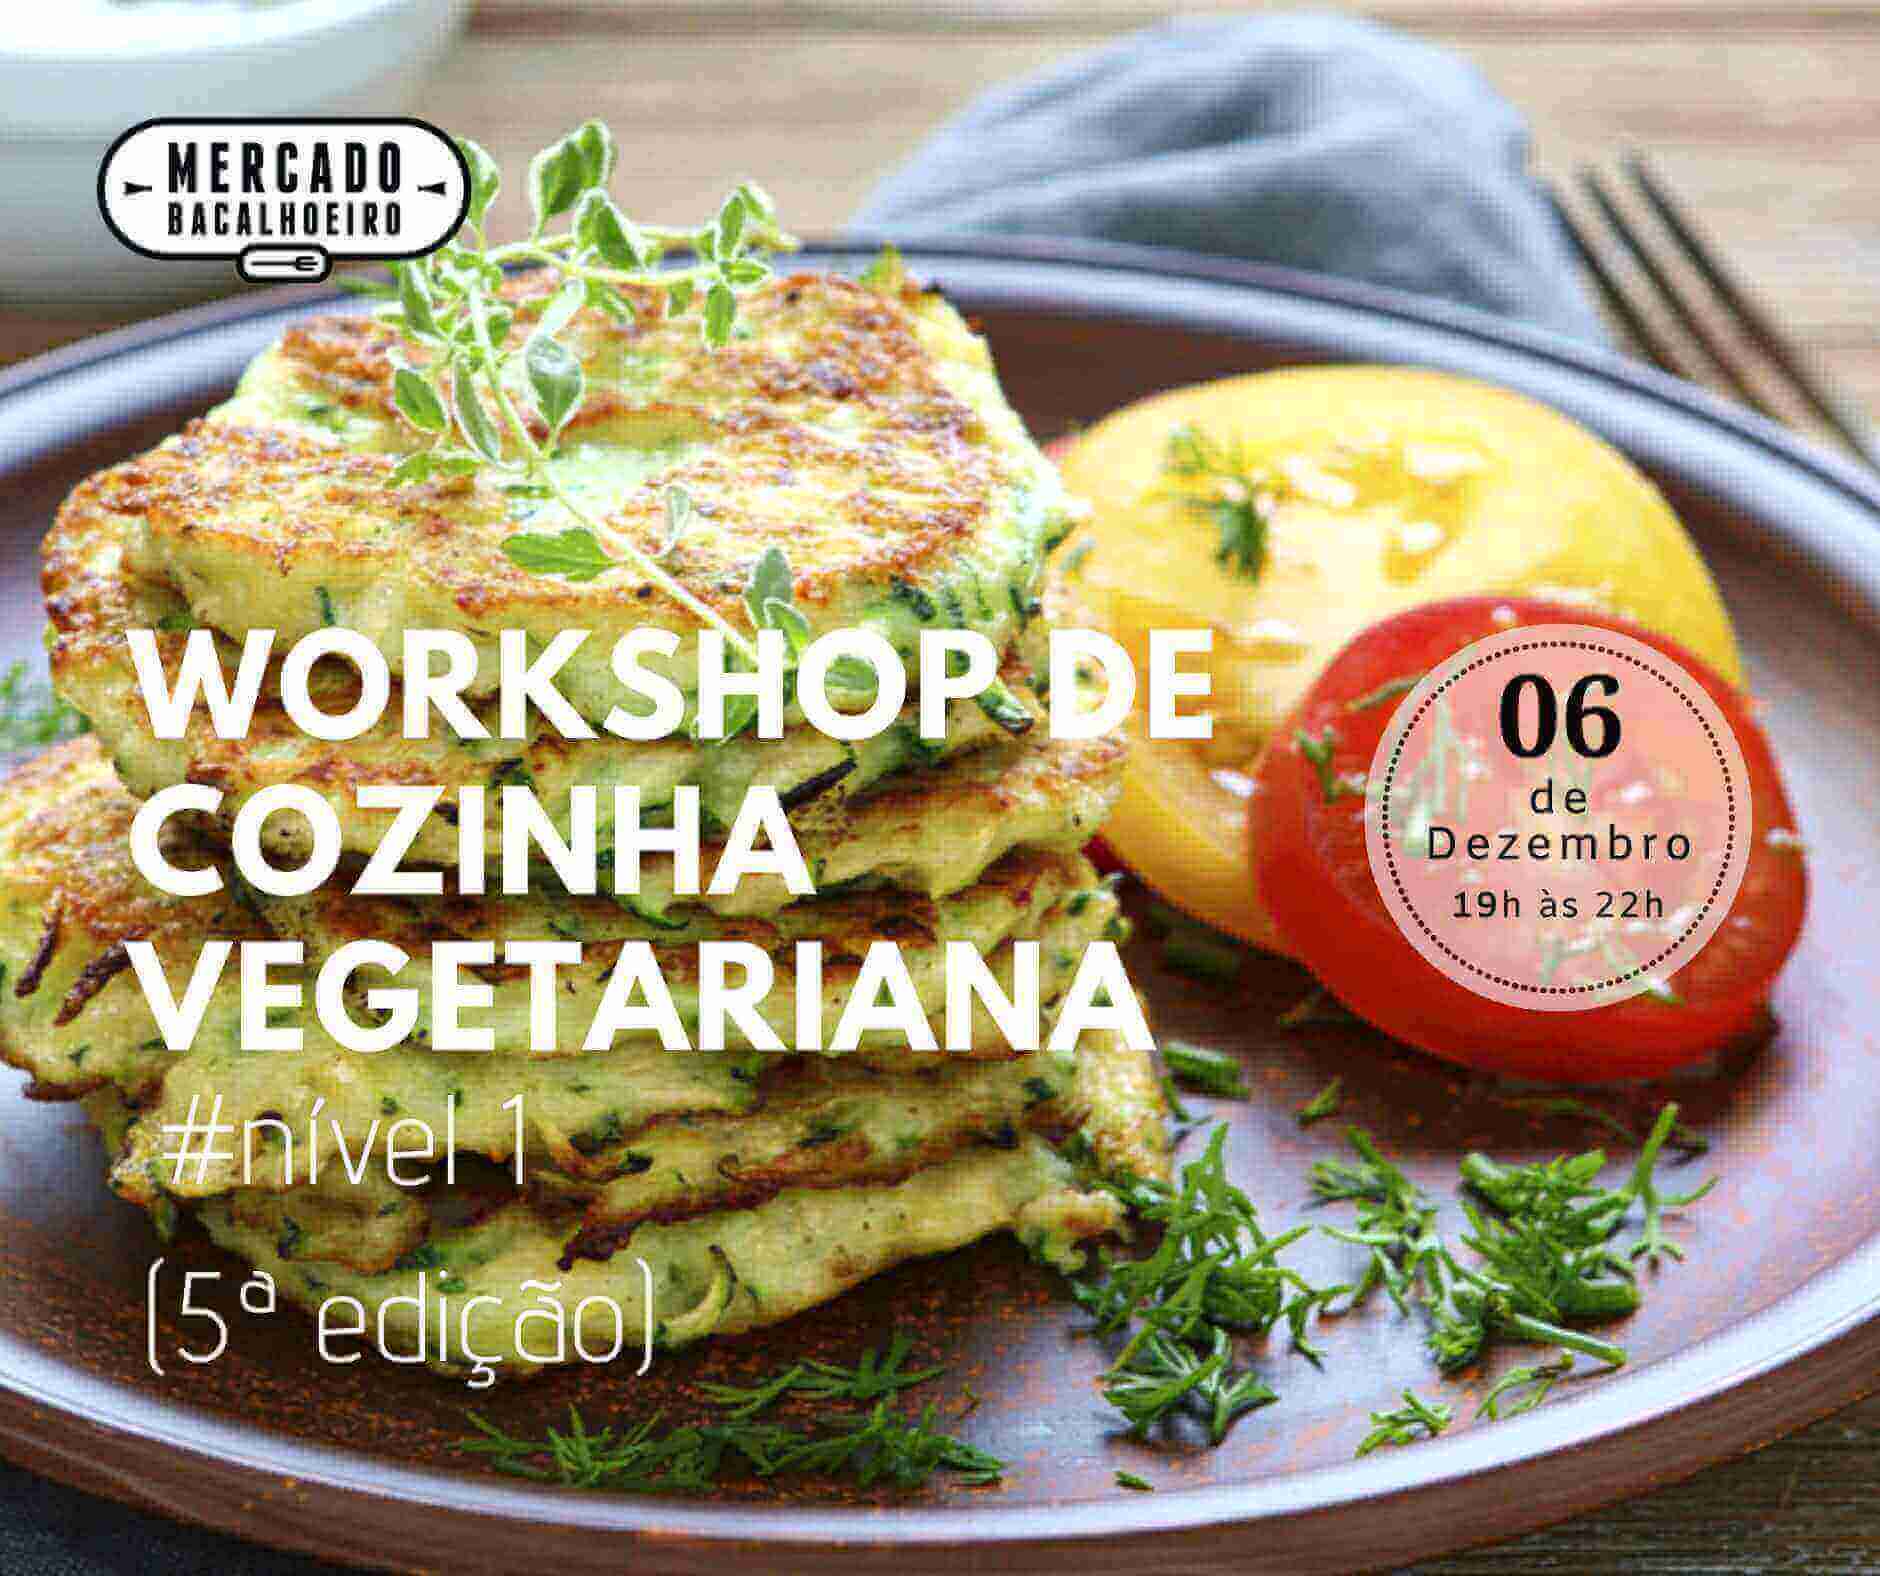 Workshop de cozinha vegetariana nível 1 (5ª Edição)